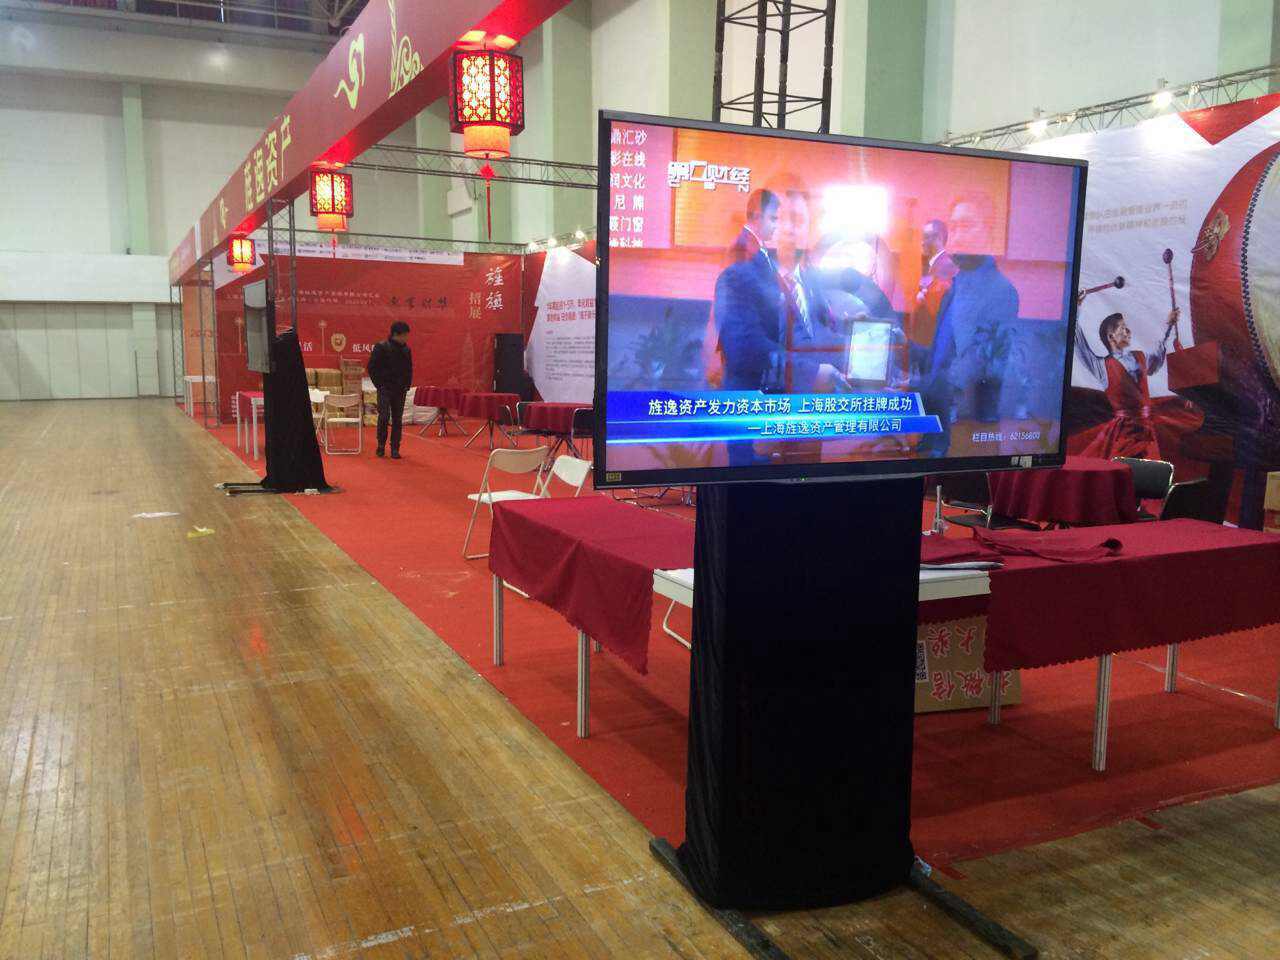 上海黄浦展会液晶显示器安装公司 乐视电视机 礼仪庆典发光背景板搭建